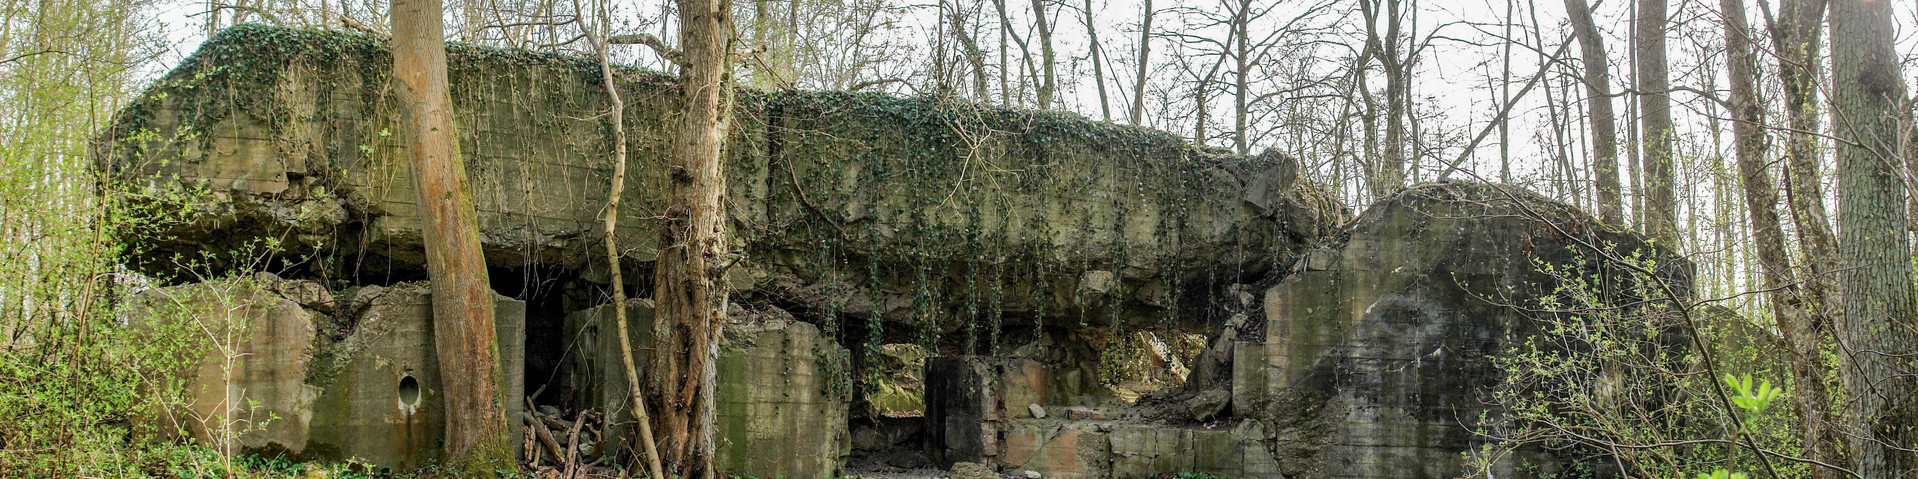 Gut erhaltene Reste eines Bunkers zwischen Bäumen.